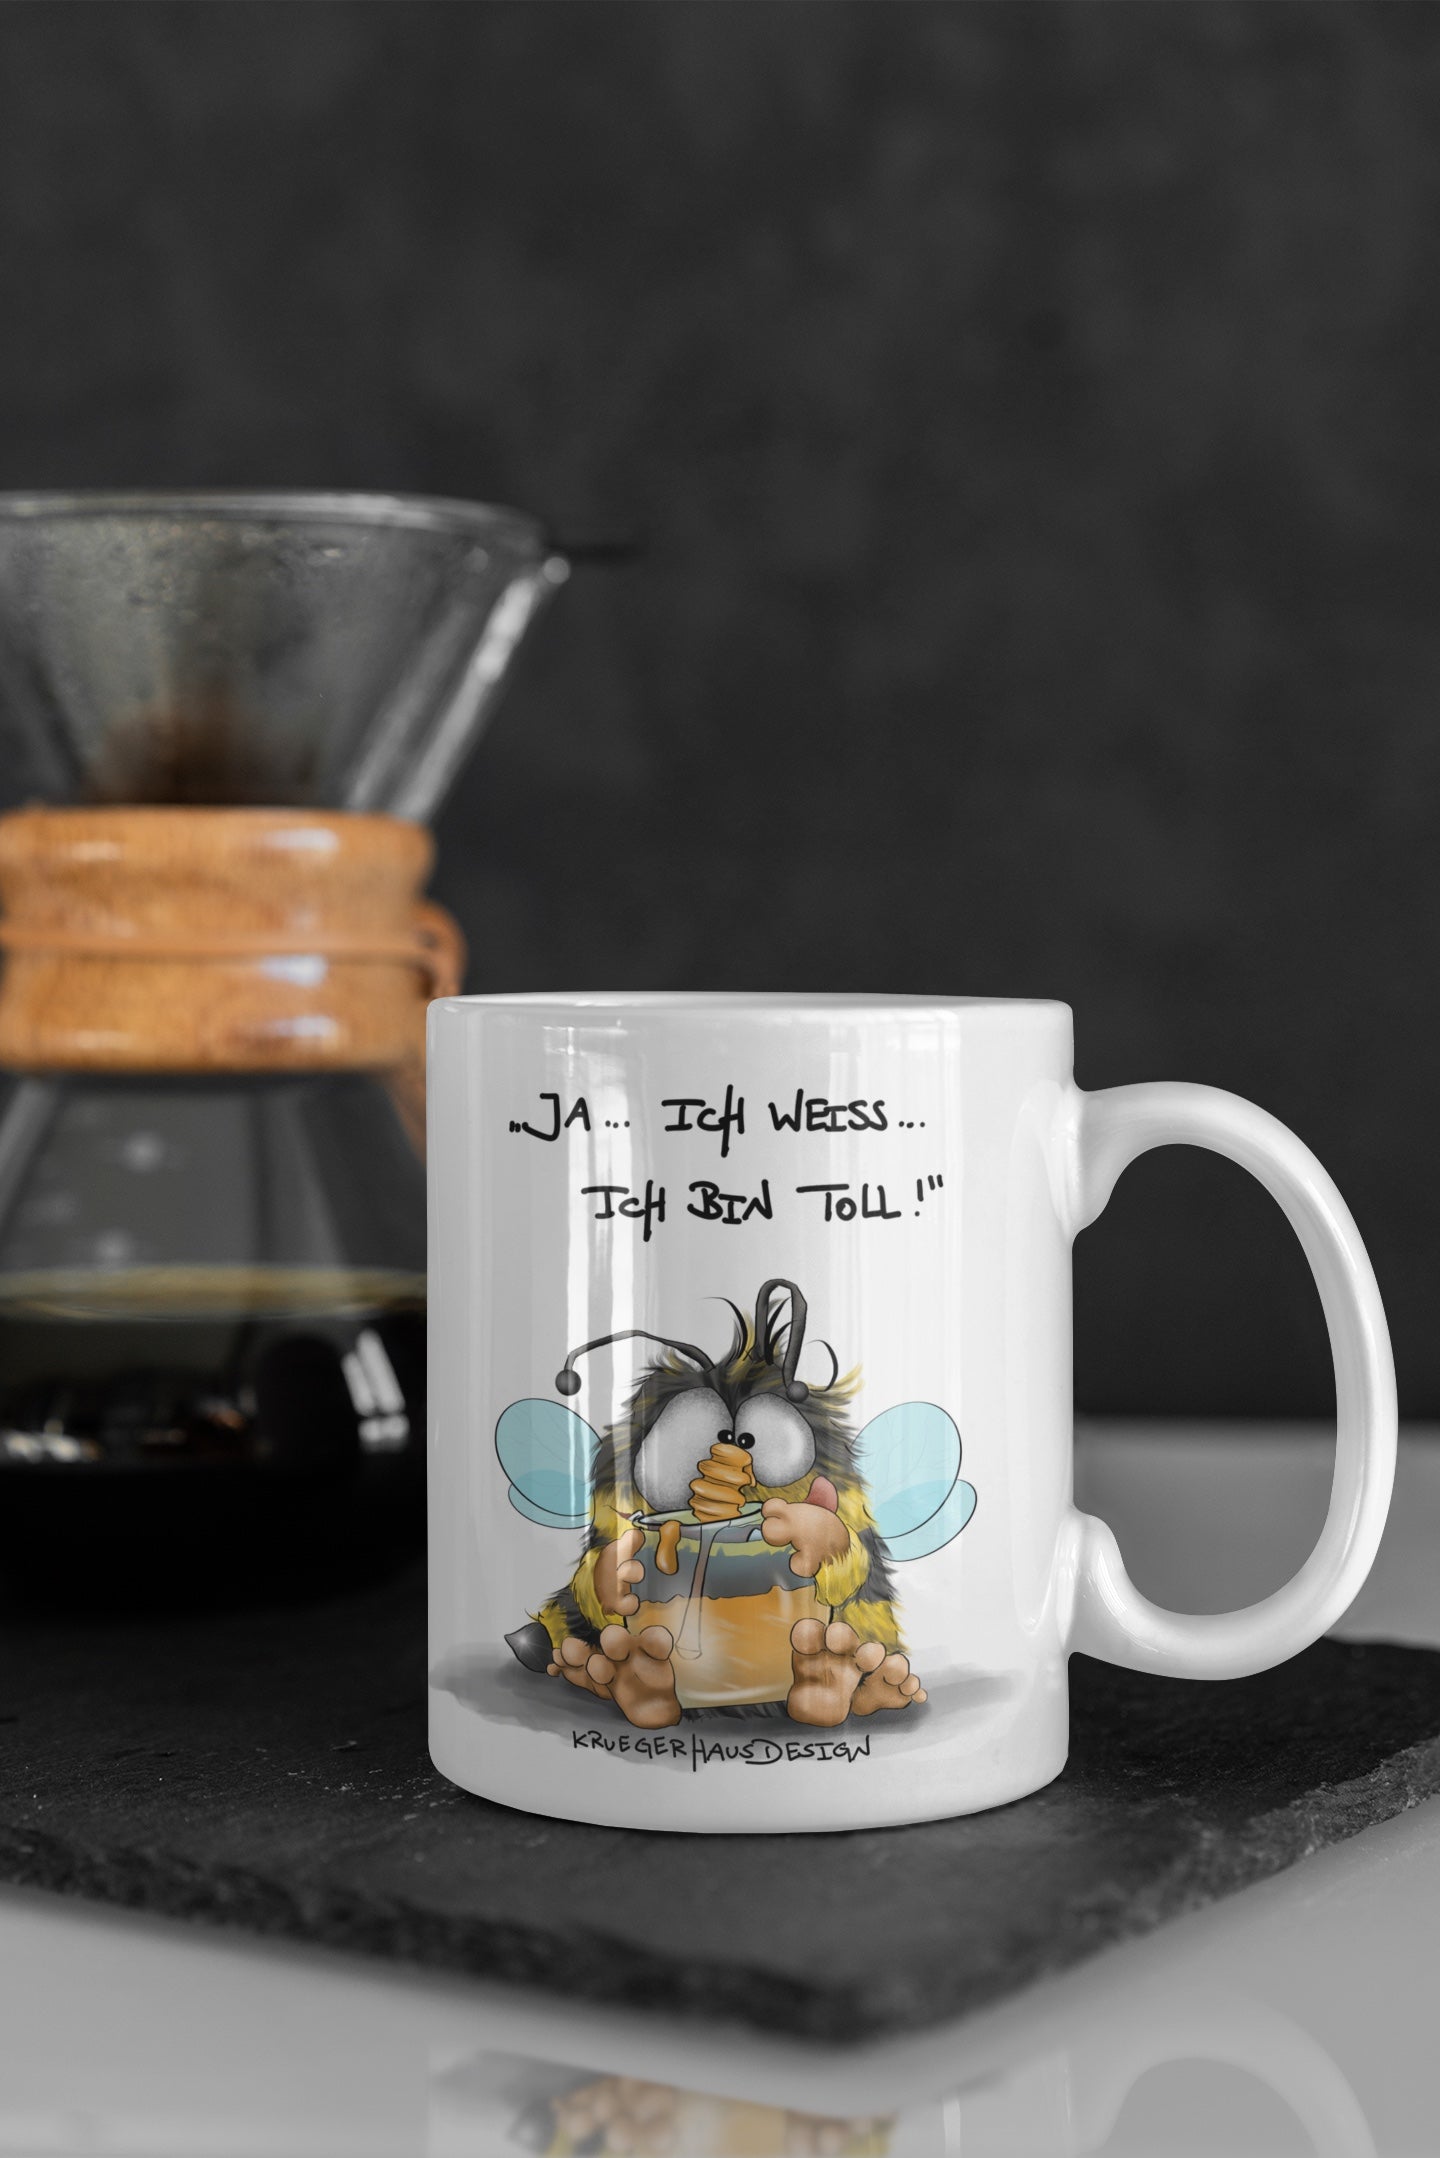 Tasse, Kaffeetasse Kruegerhausdesign Monster und Spruch "Ja.. ich weiß ..." Volldruck